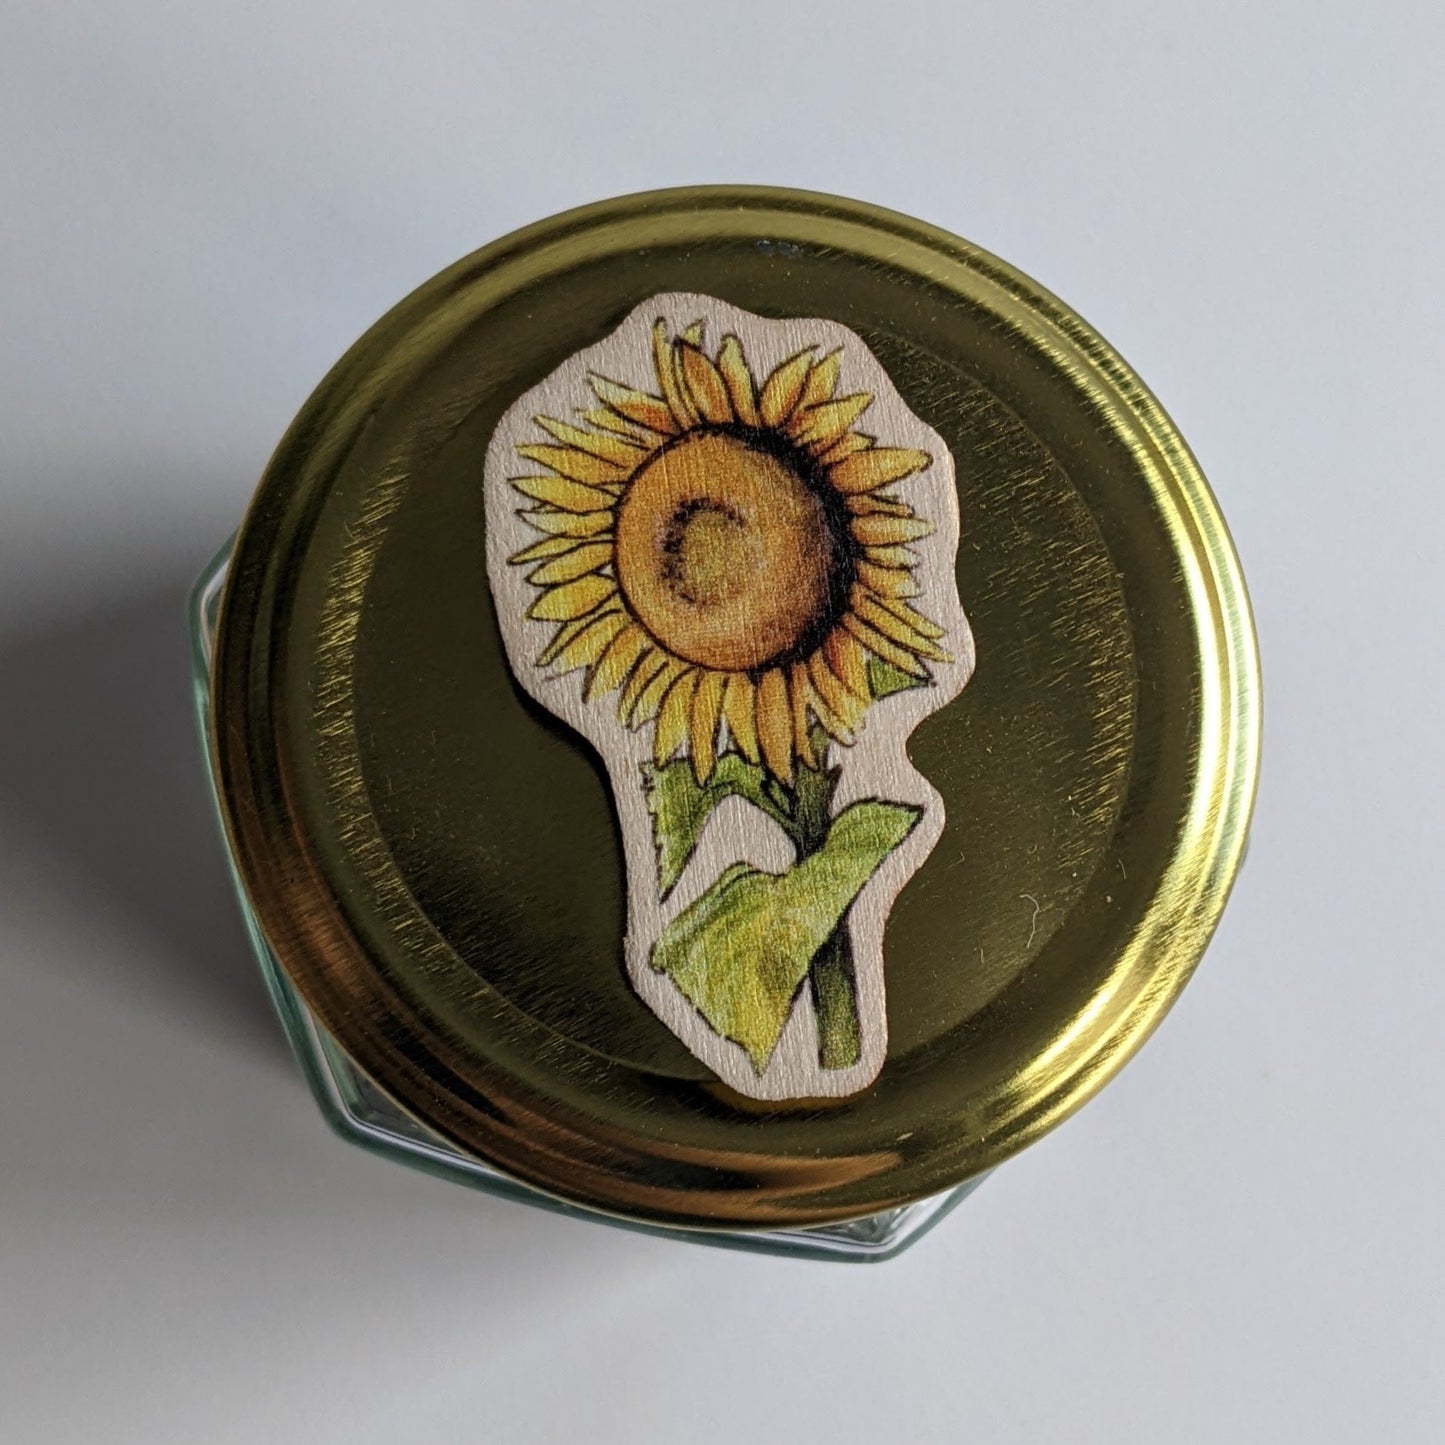 "Solidarity" Sunflower Wooden Fridge Magnet